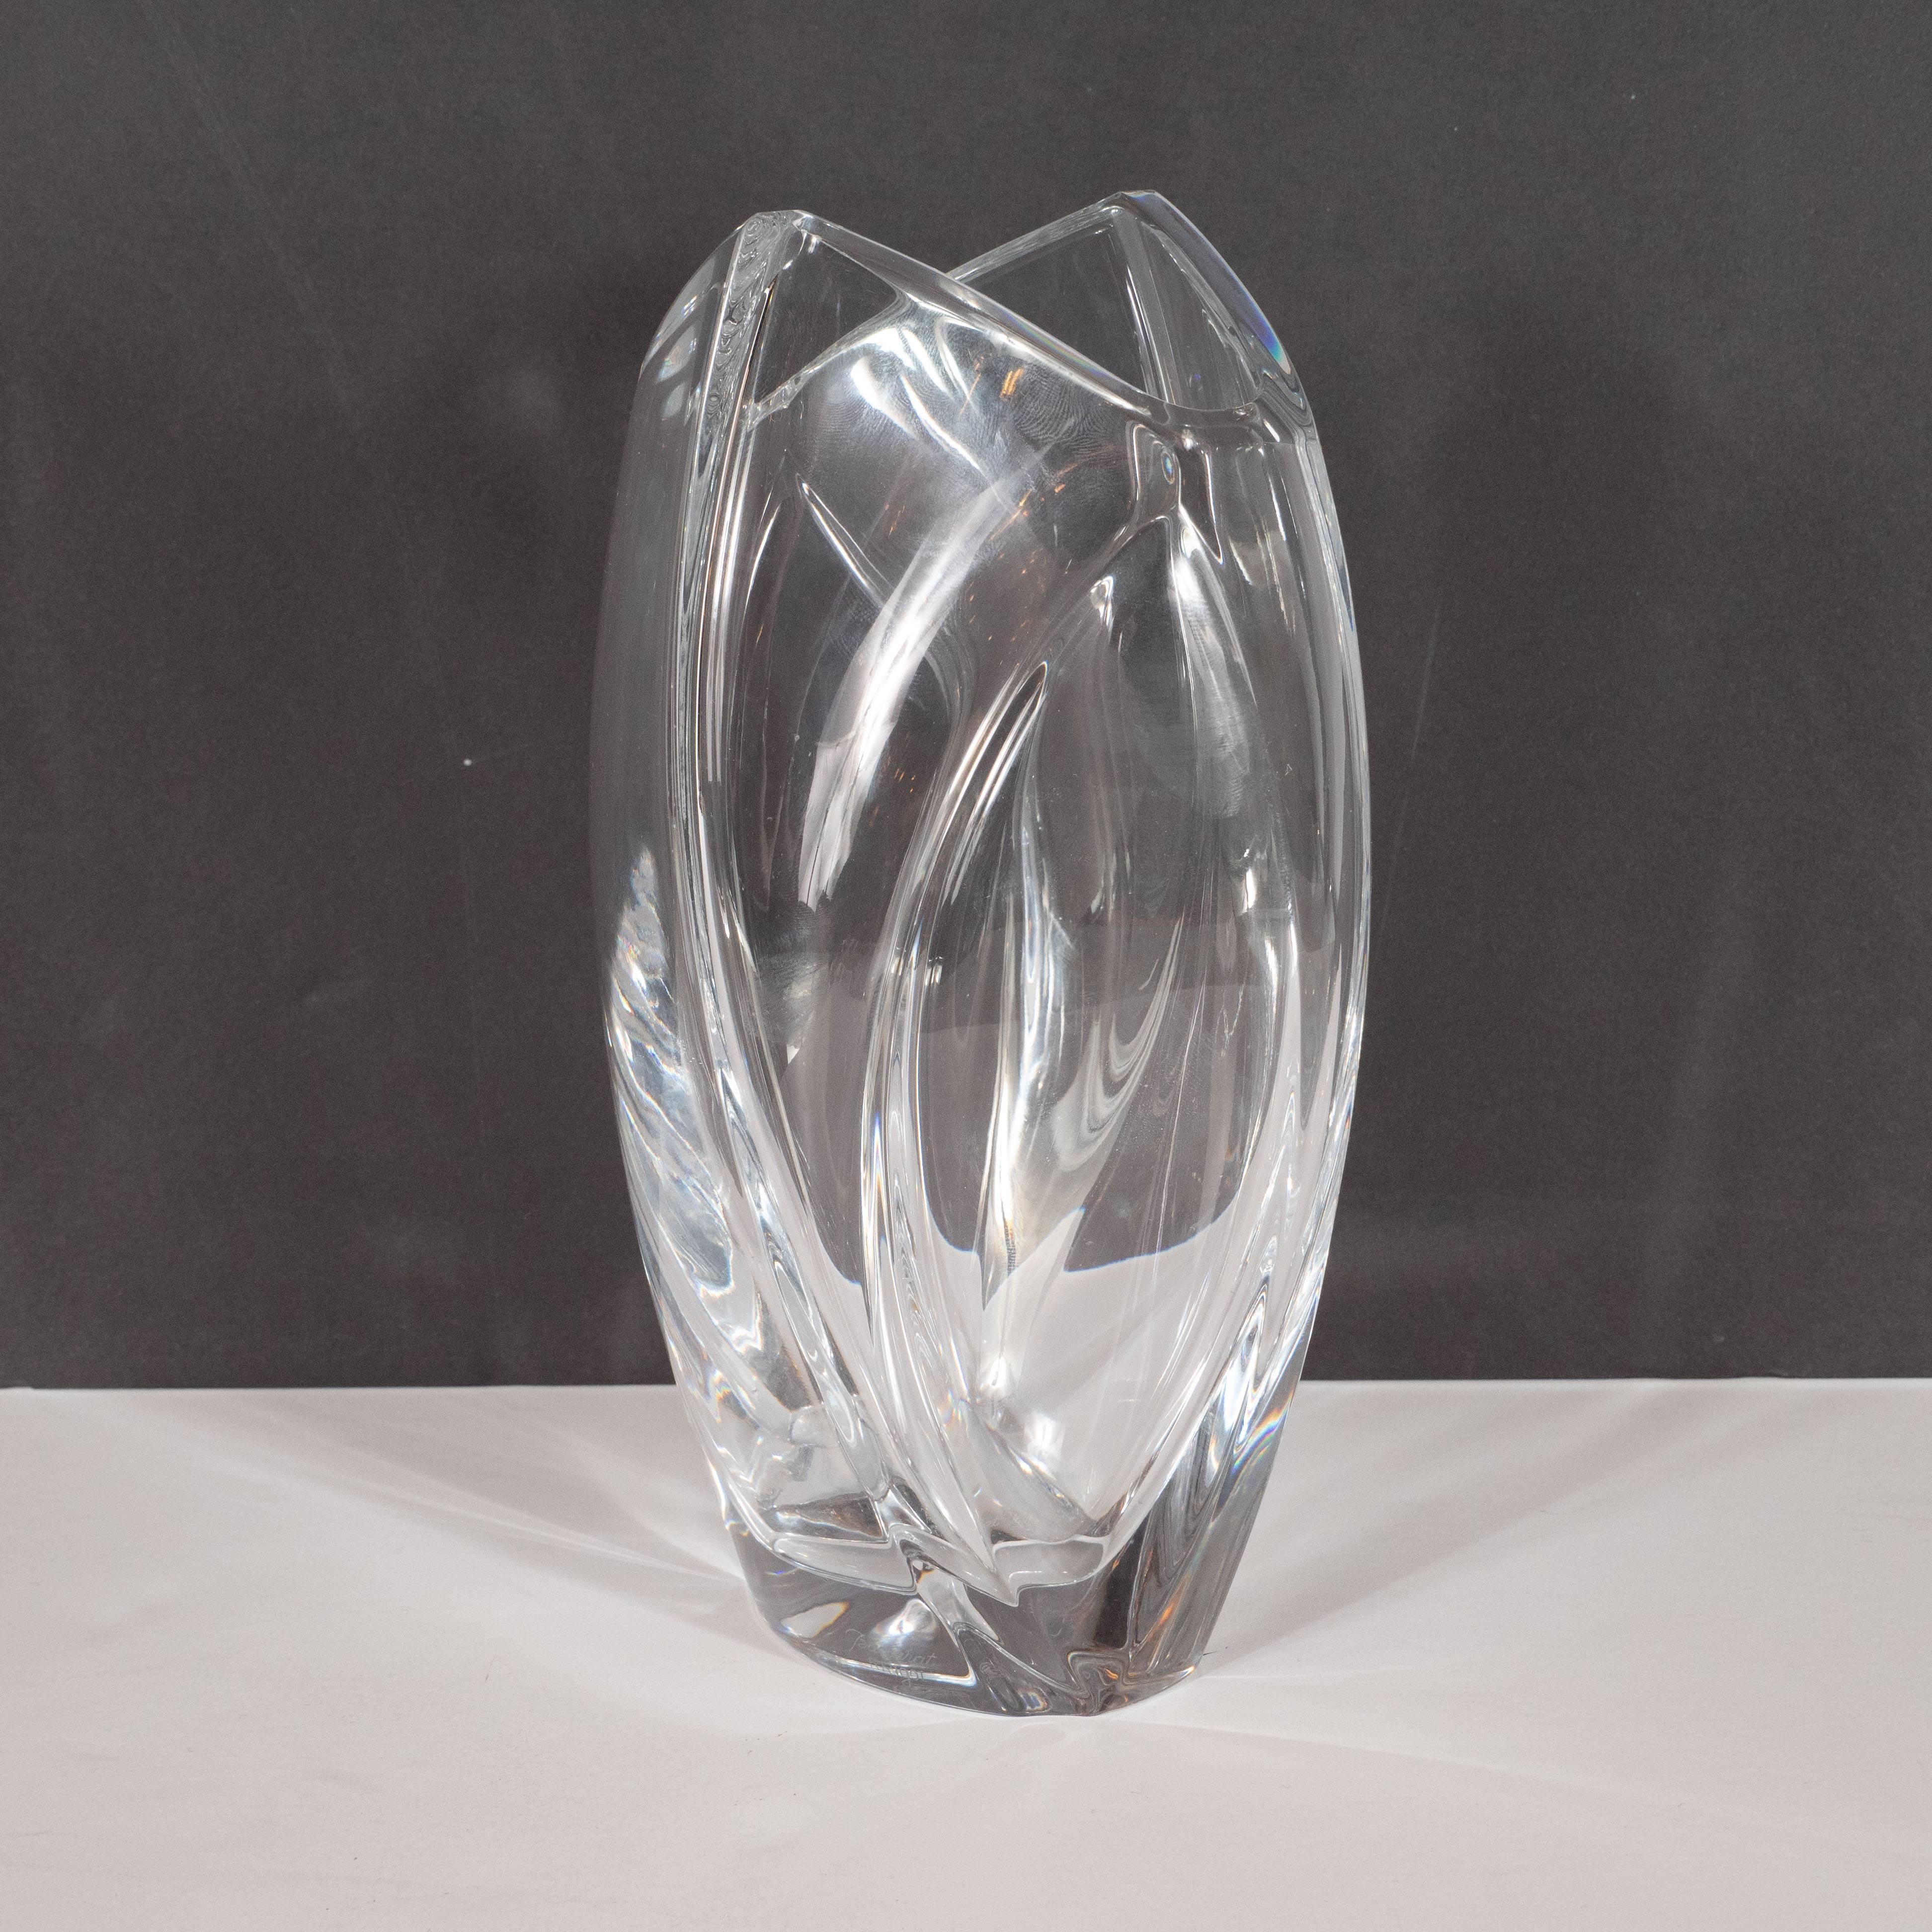 Modernist Sculptural Translucent Crystal Vase by Robert Rigot for Baccarat 1